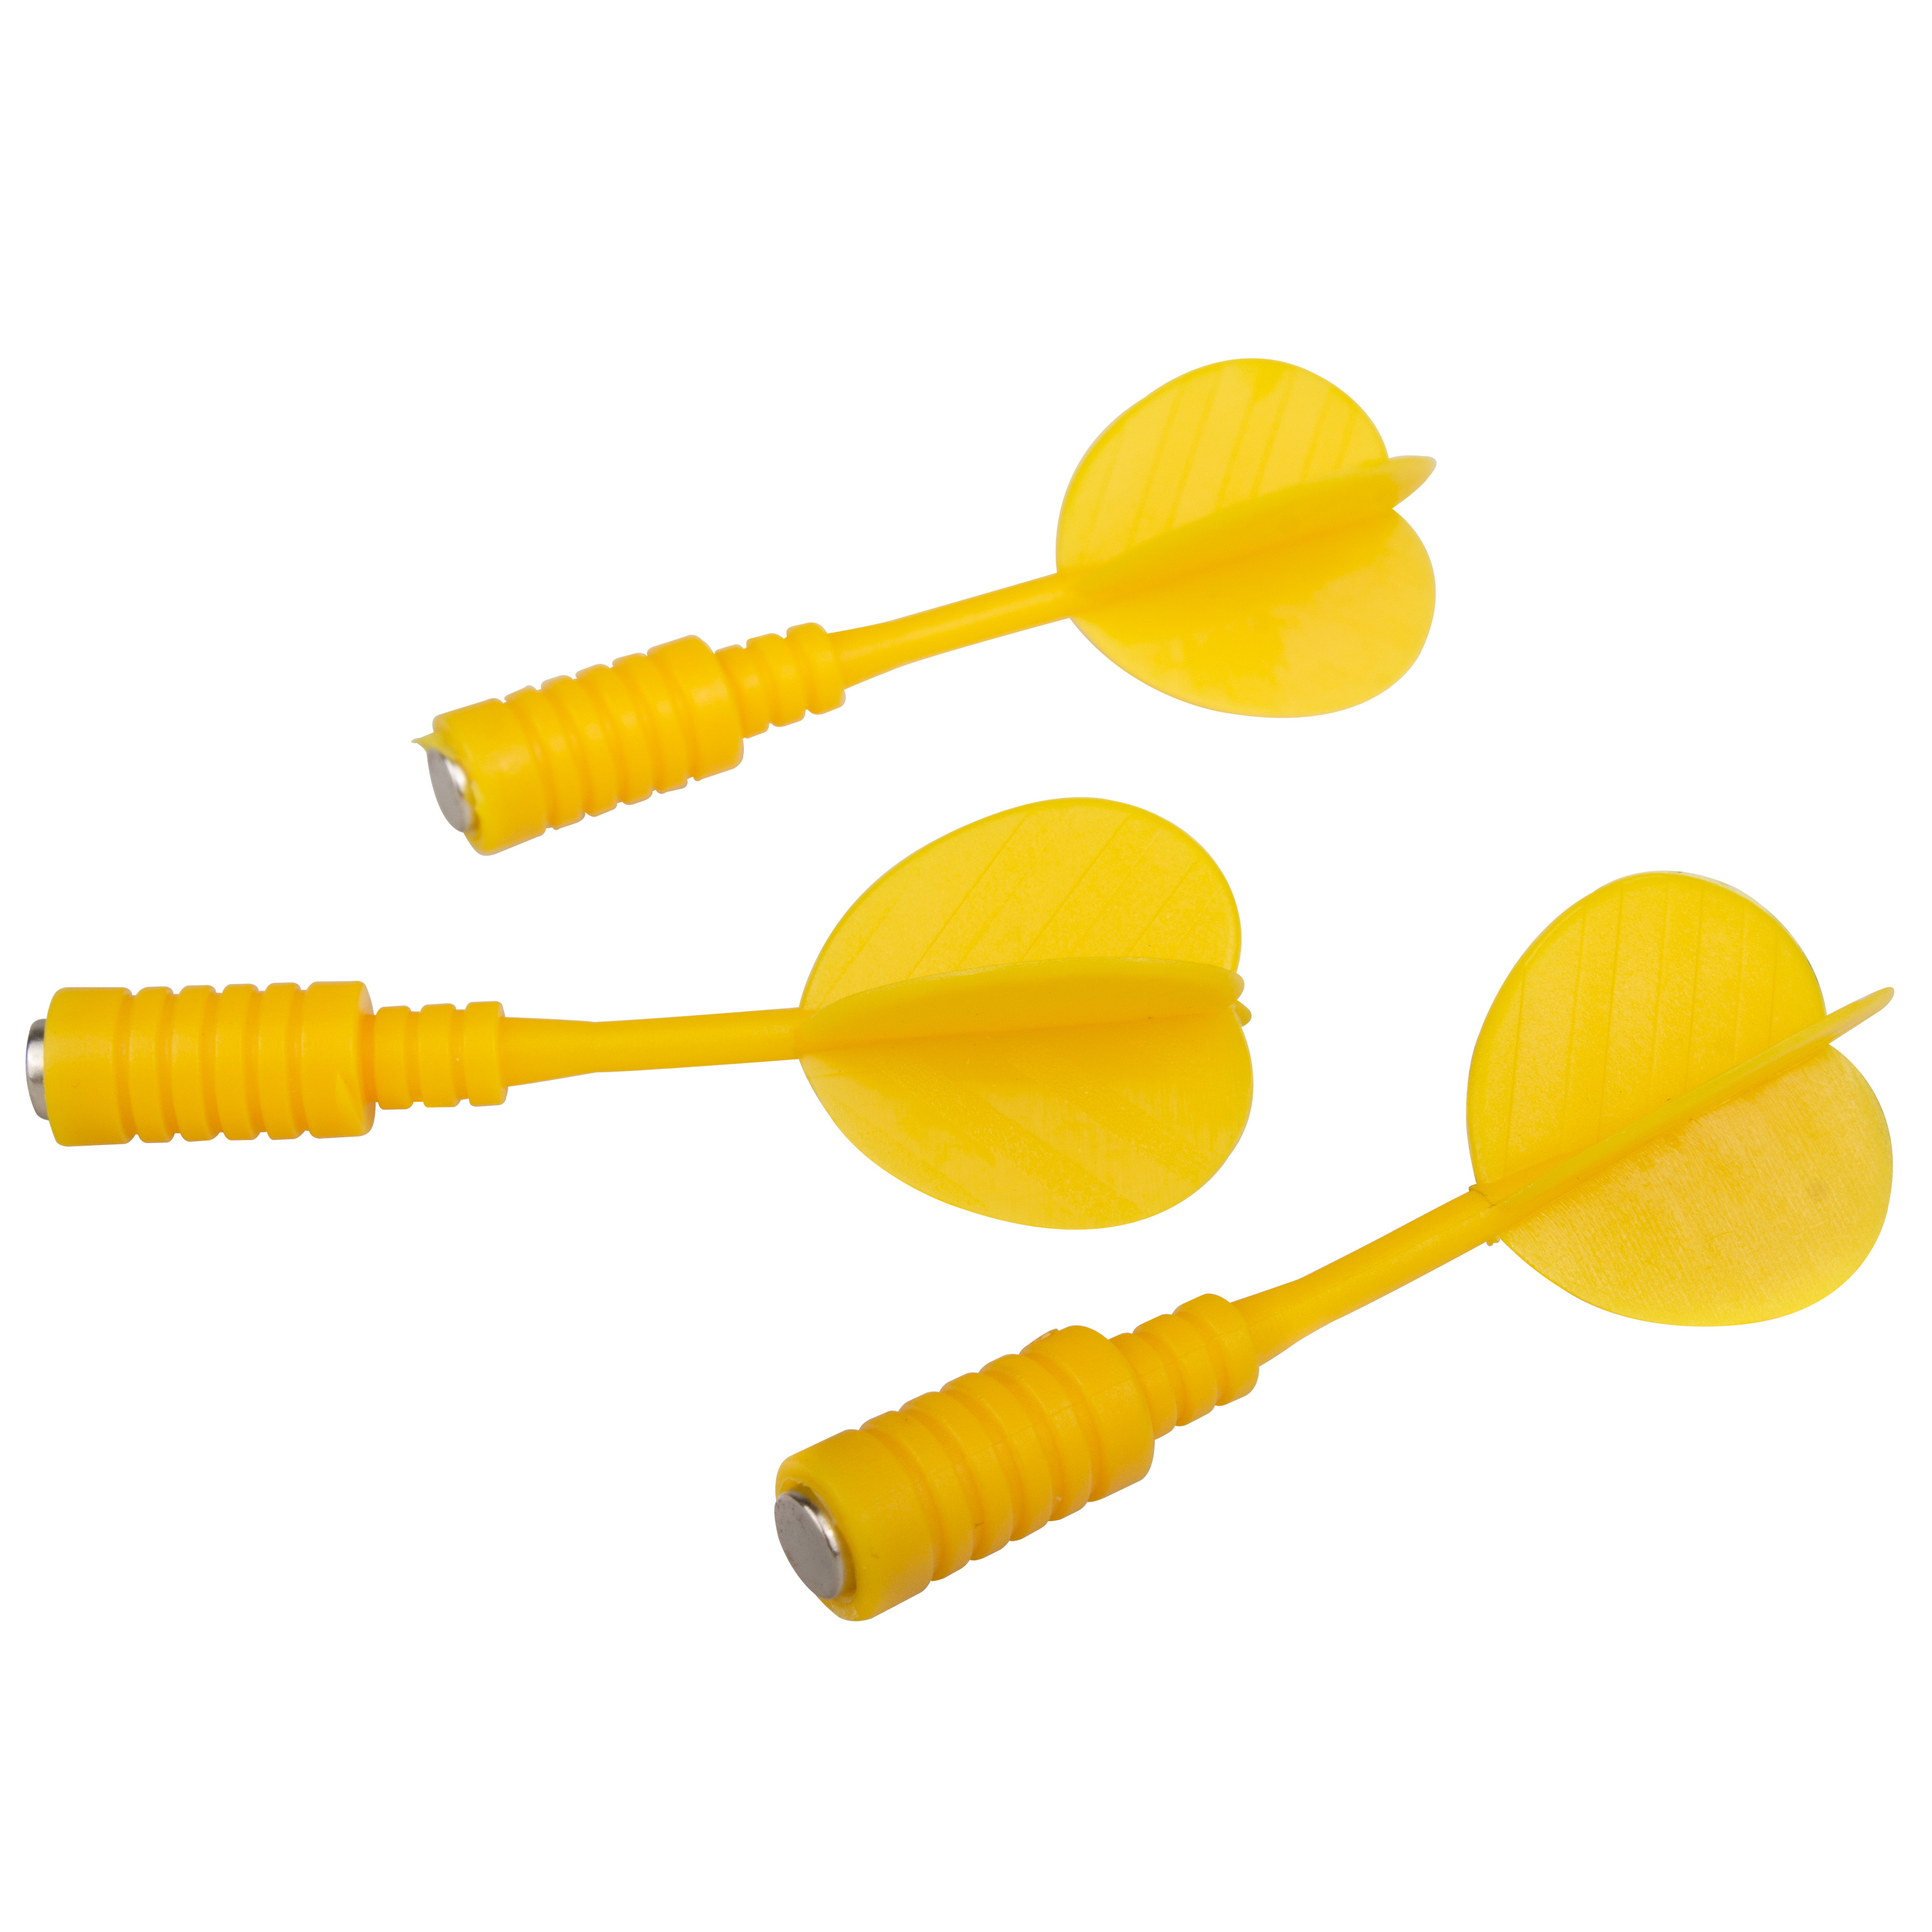 3 Ersatzpfeile für Magnet-Dartboard, gelb